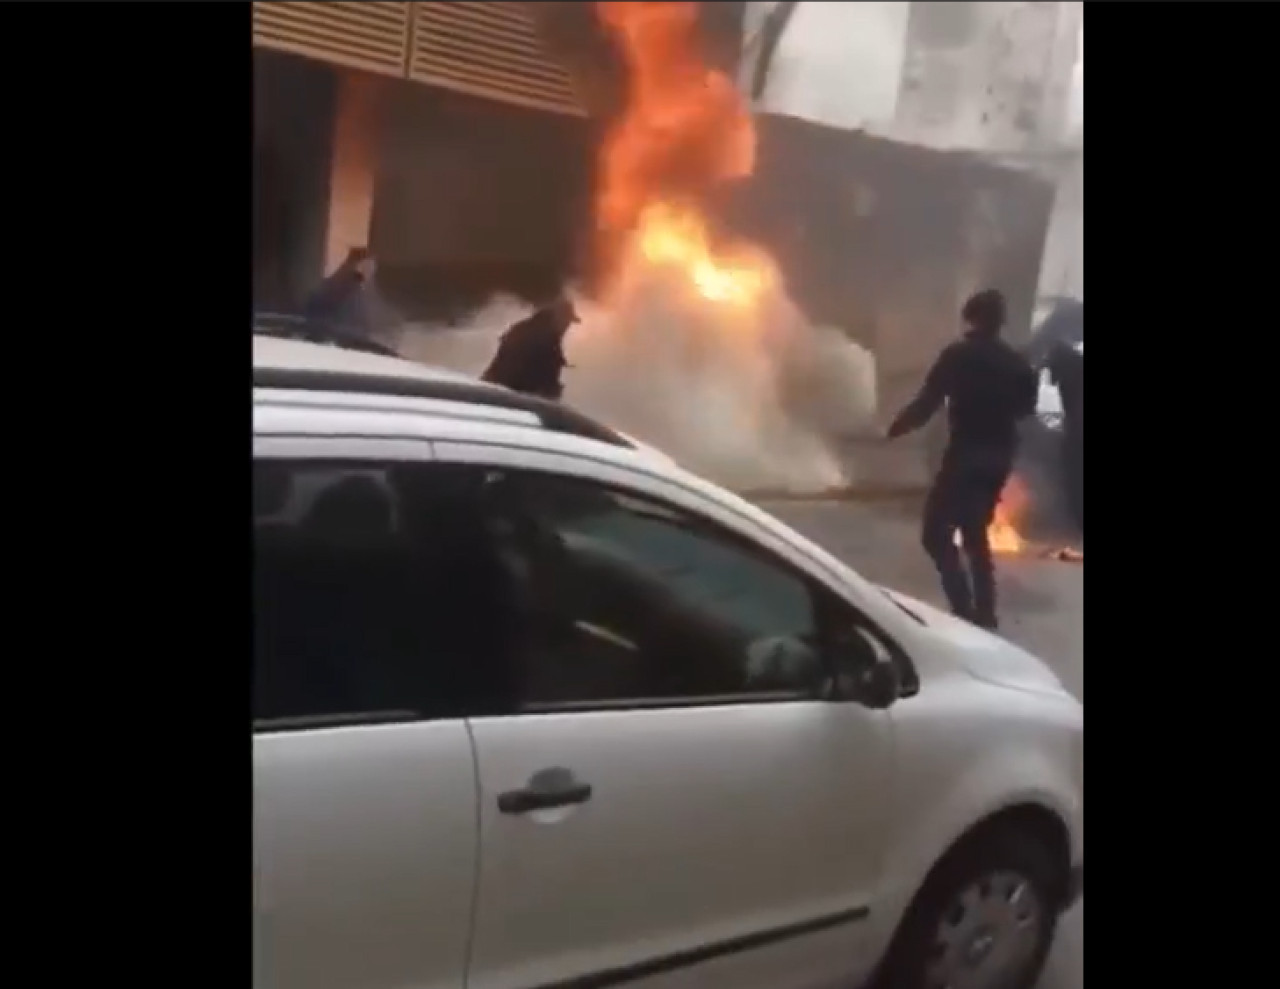 Imágenes preocupantes del hombre prendido fuego en Pergamino, Buenos Aires. Foto: Captura de video.